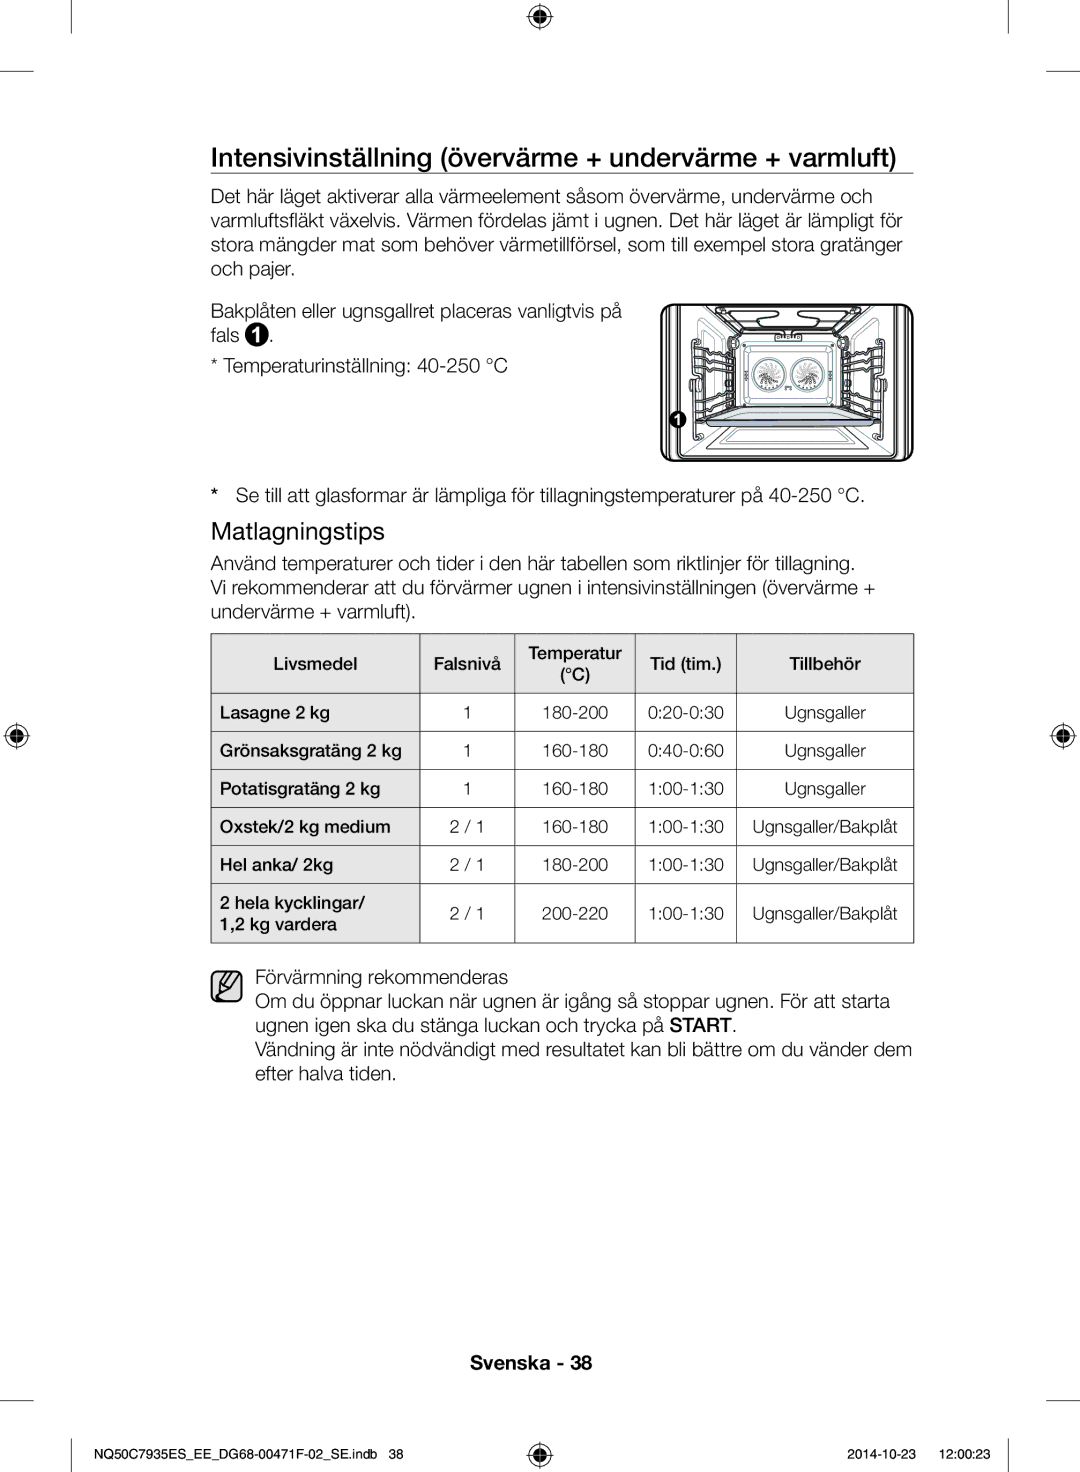 Samsung NQ50C7935ES/EE manual Intensivinställning övervärme + undervärme + varmluft 